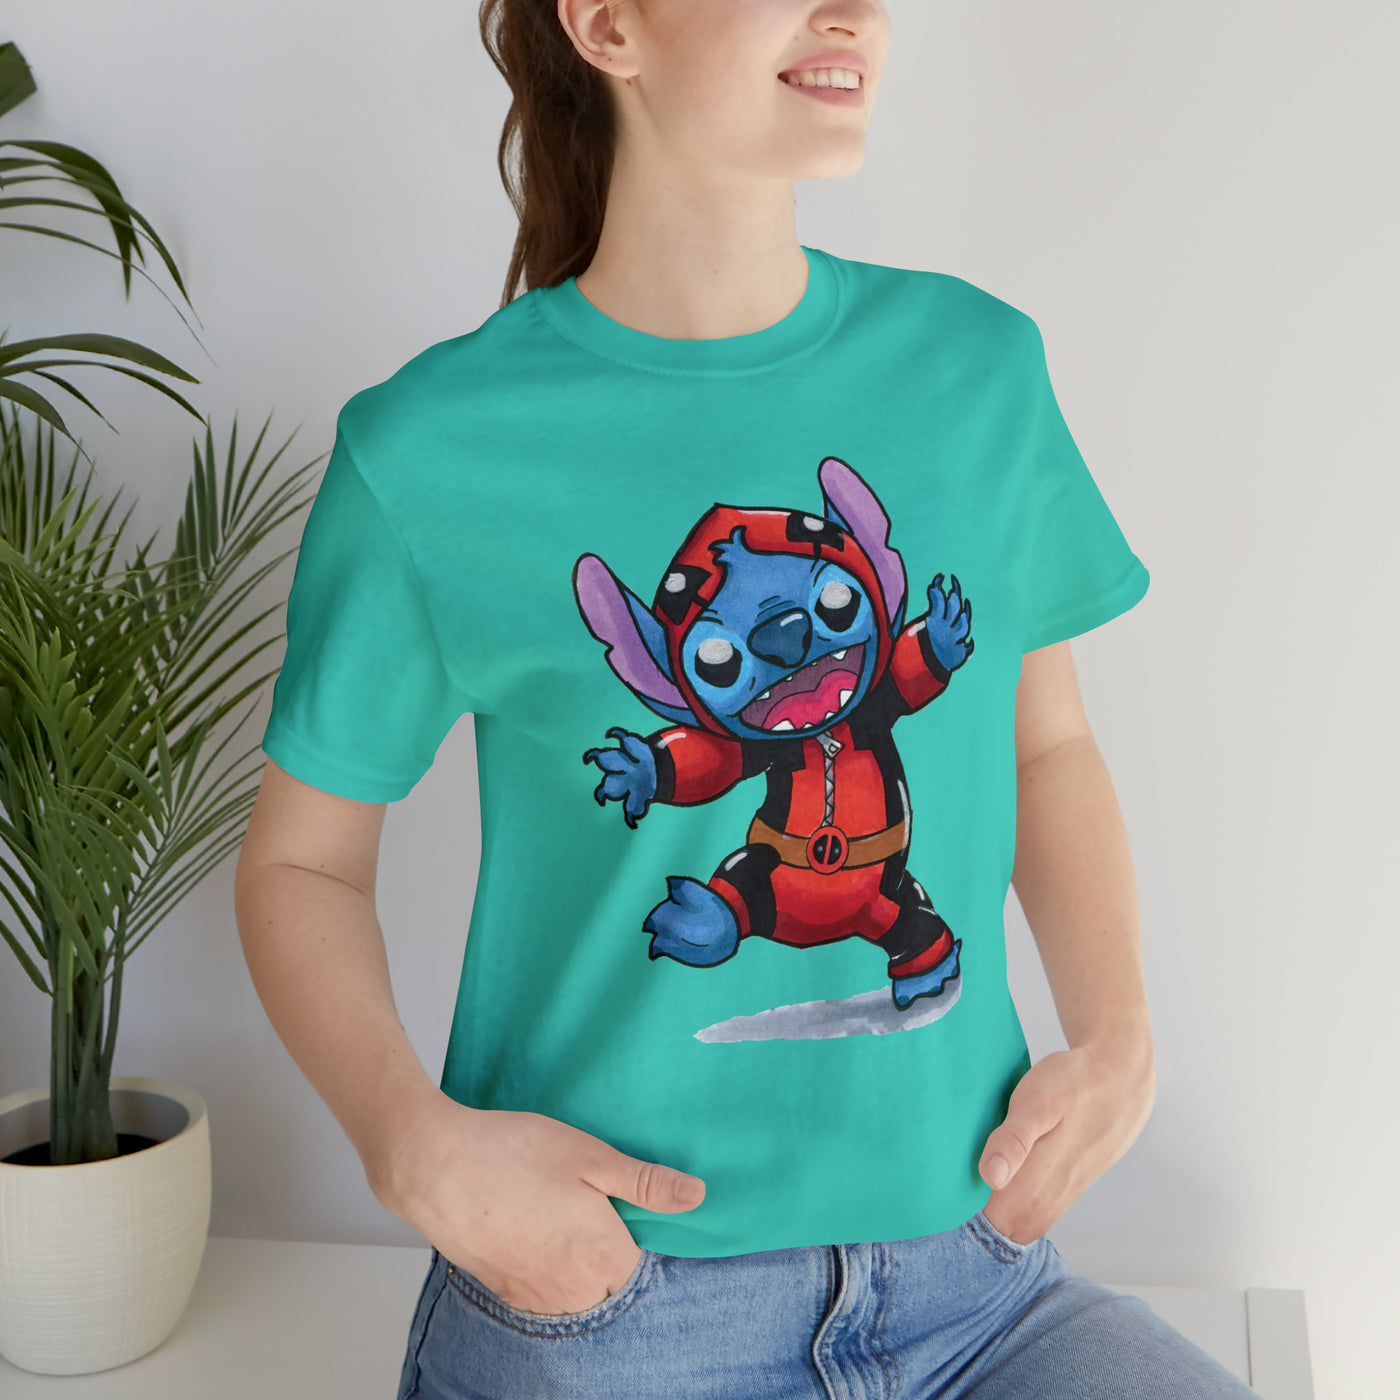 Stitchpool Fan Shirt